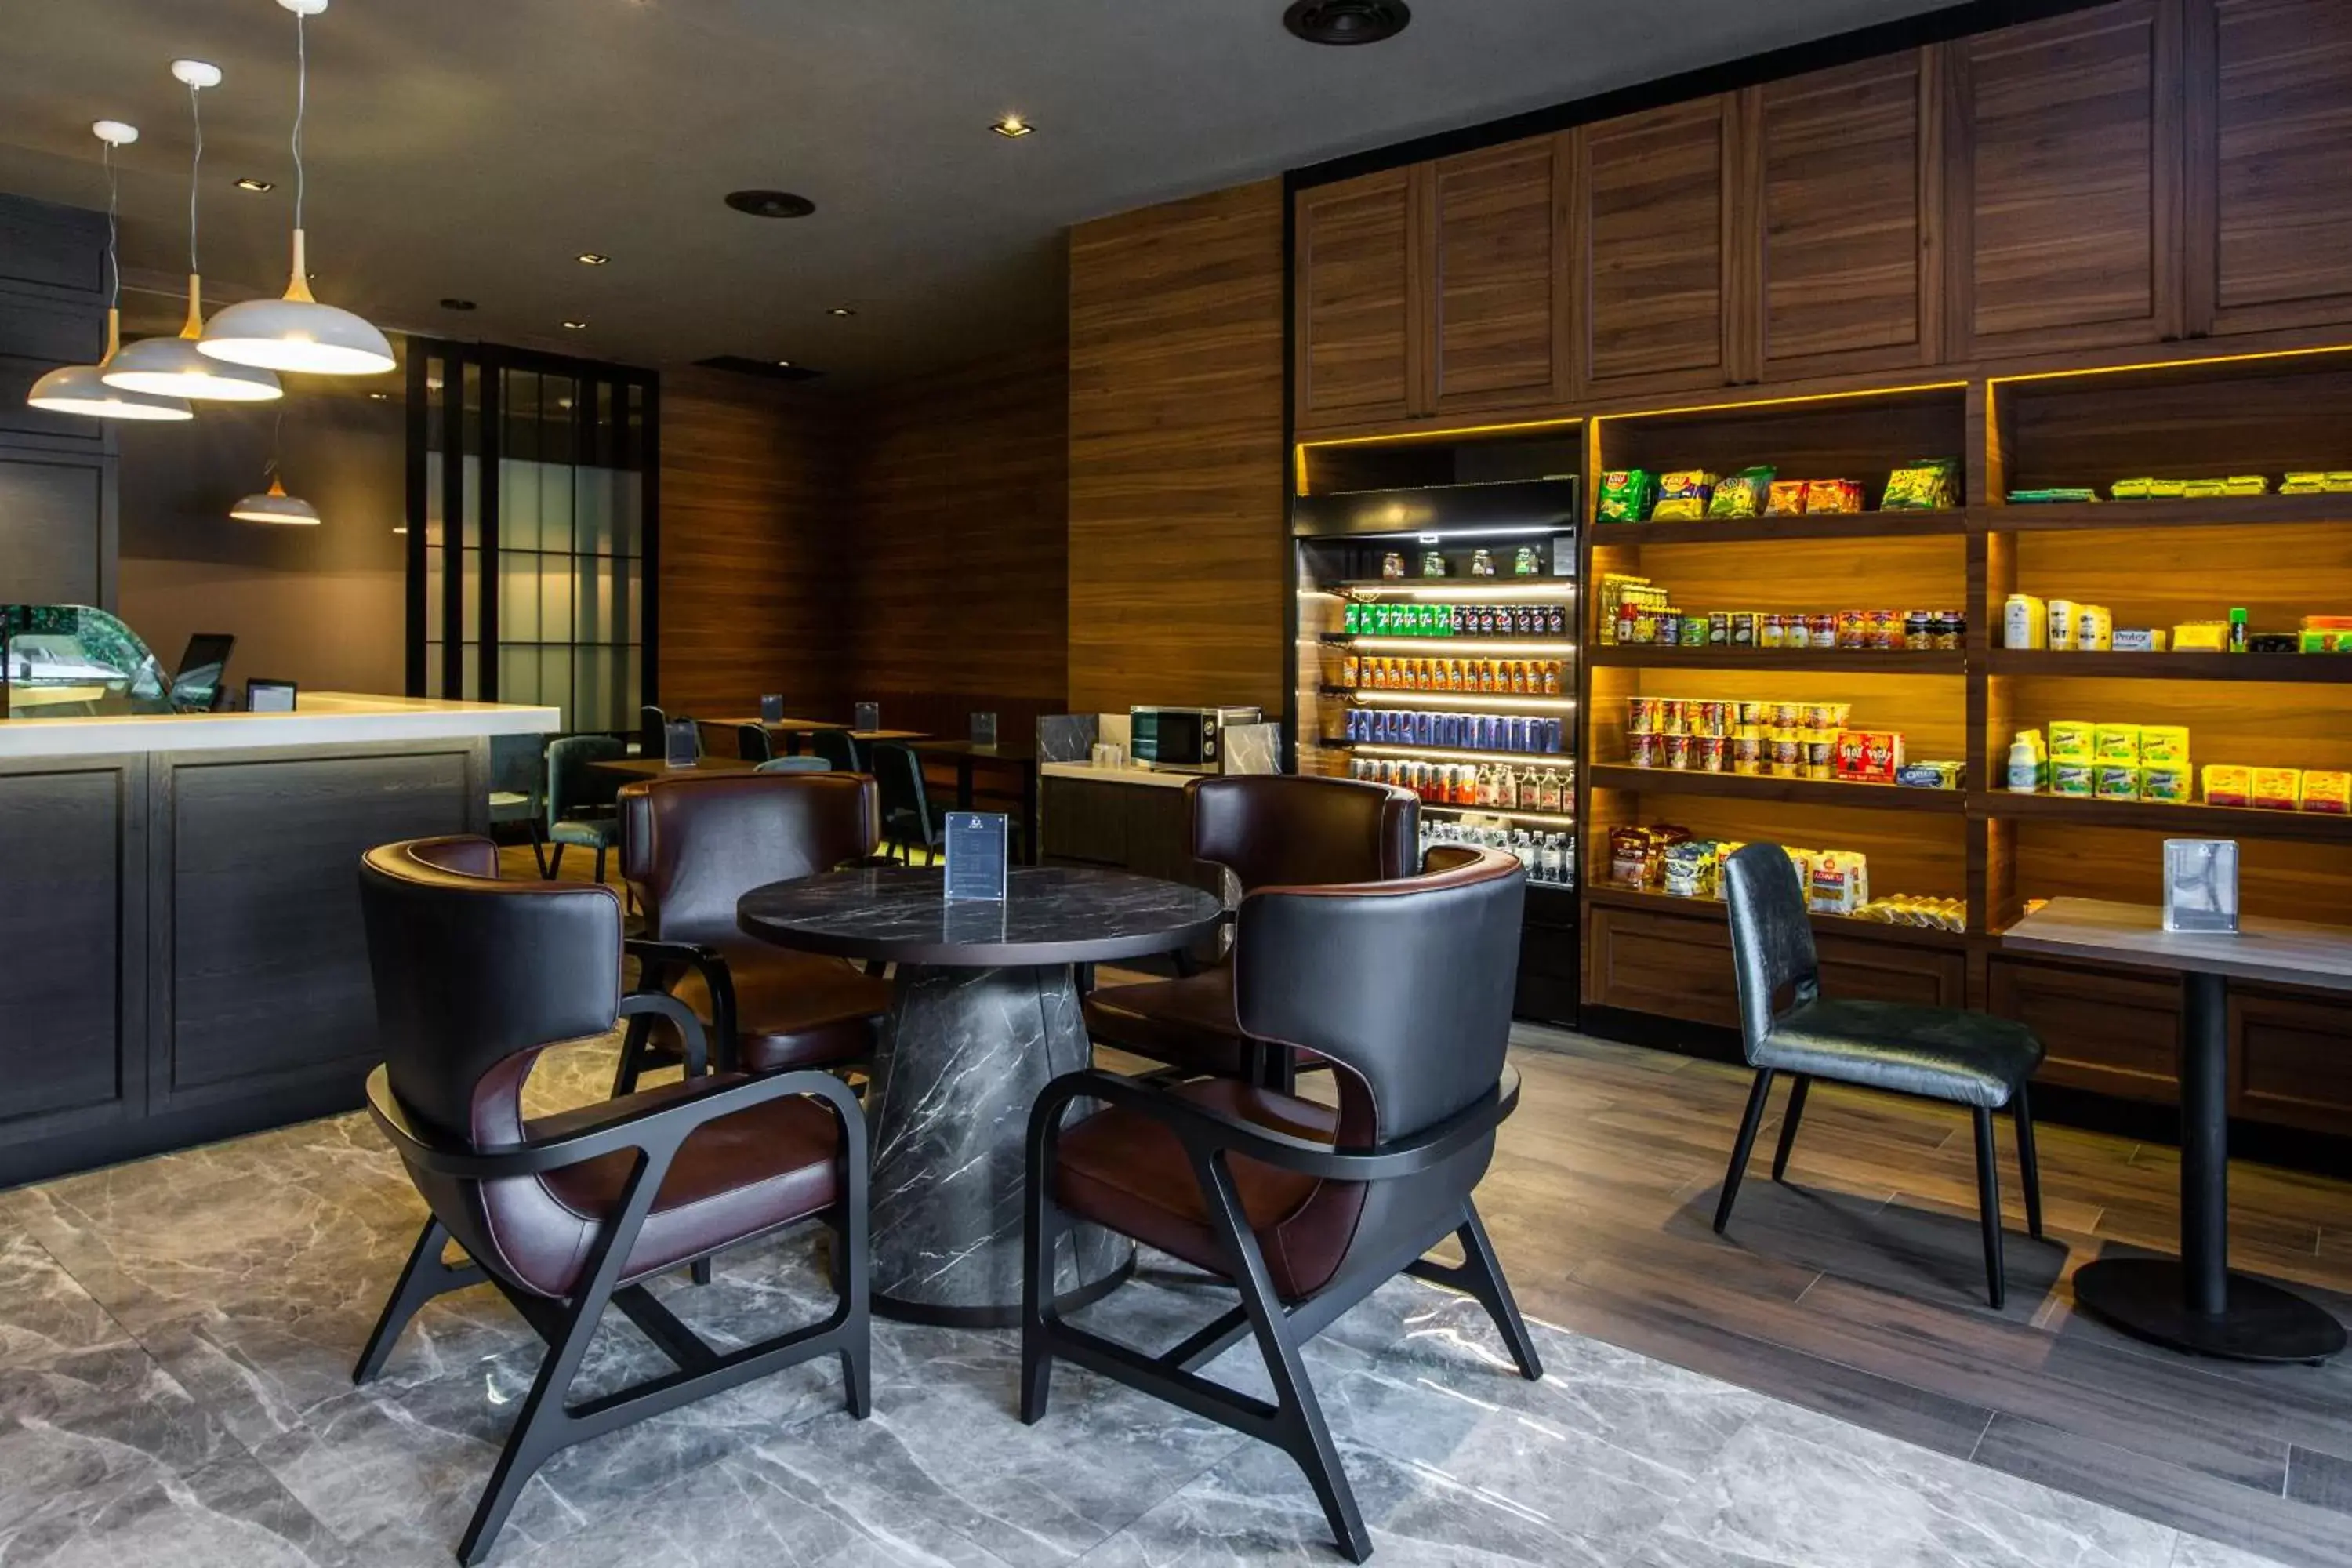 Restaurant/places to eat, Lounge/Bar in Novotel Suites Sukhumvit 39